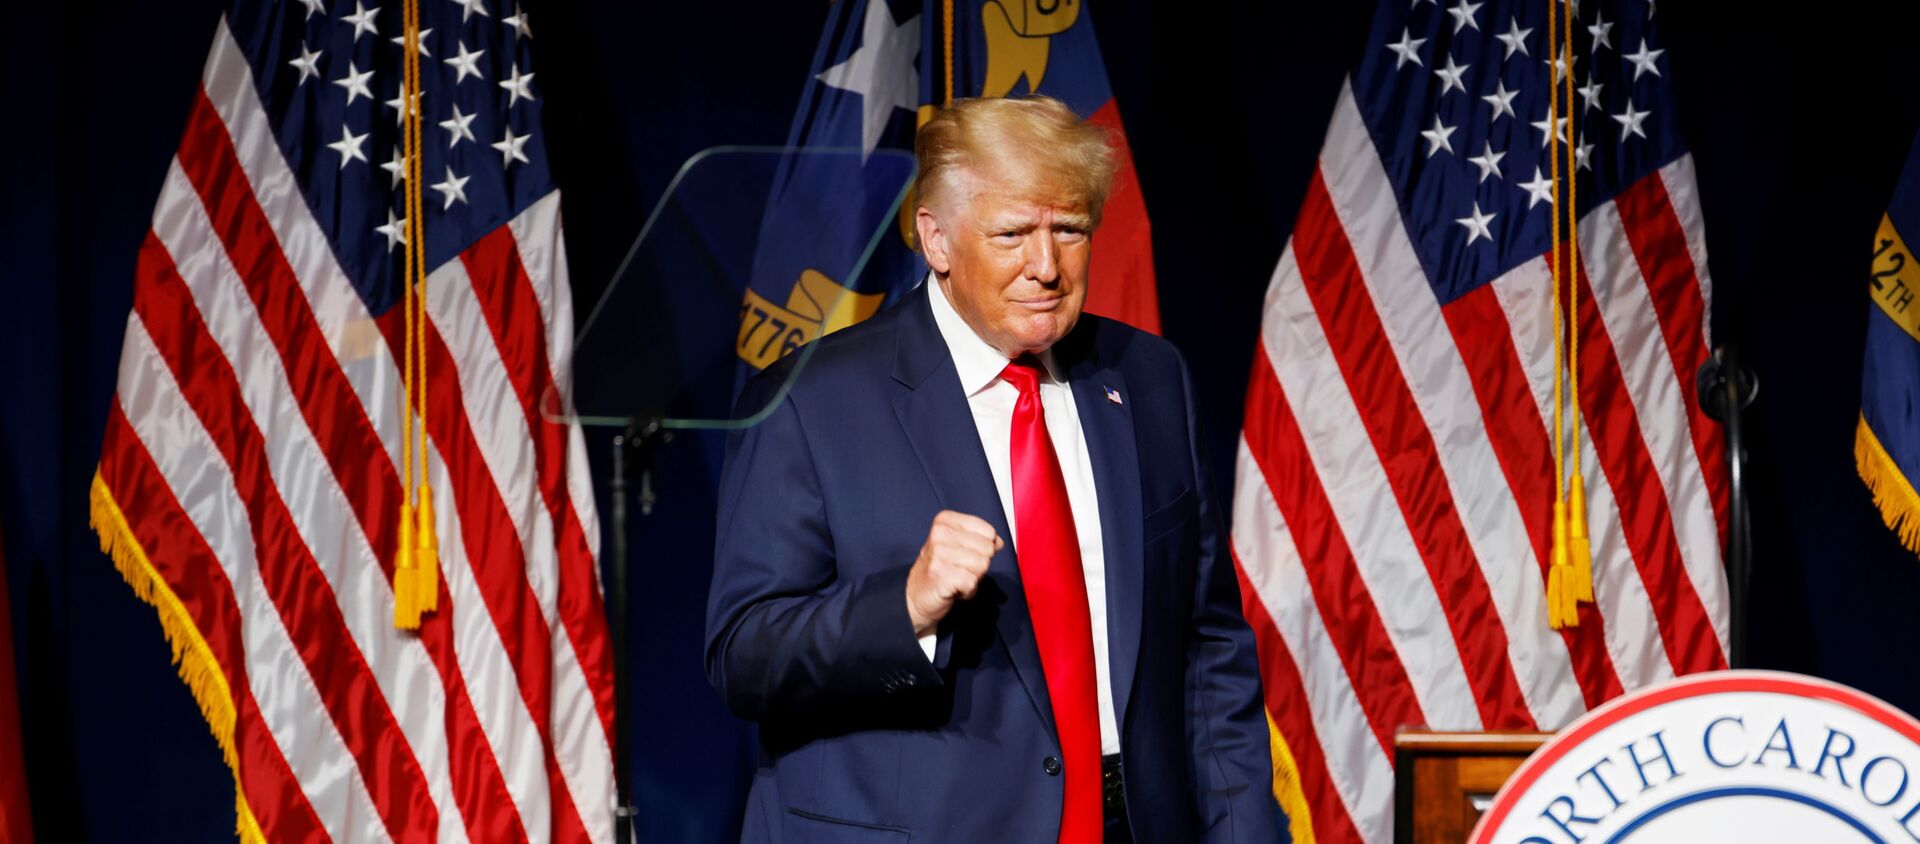 Cựu Hoa Kỳ Tổng thống Donald Trump đến phát biểu tại bữa tối hội nghị GOP North Carolina ở Greenville, North Carolina, Hoa Kỳ. Ngày 5 tháng 6 năm 2021 - Sputnik Việt Nam, 1920, 06.06.2021